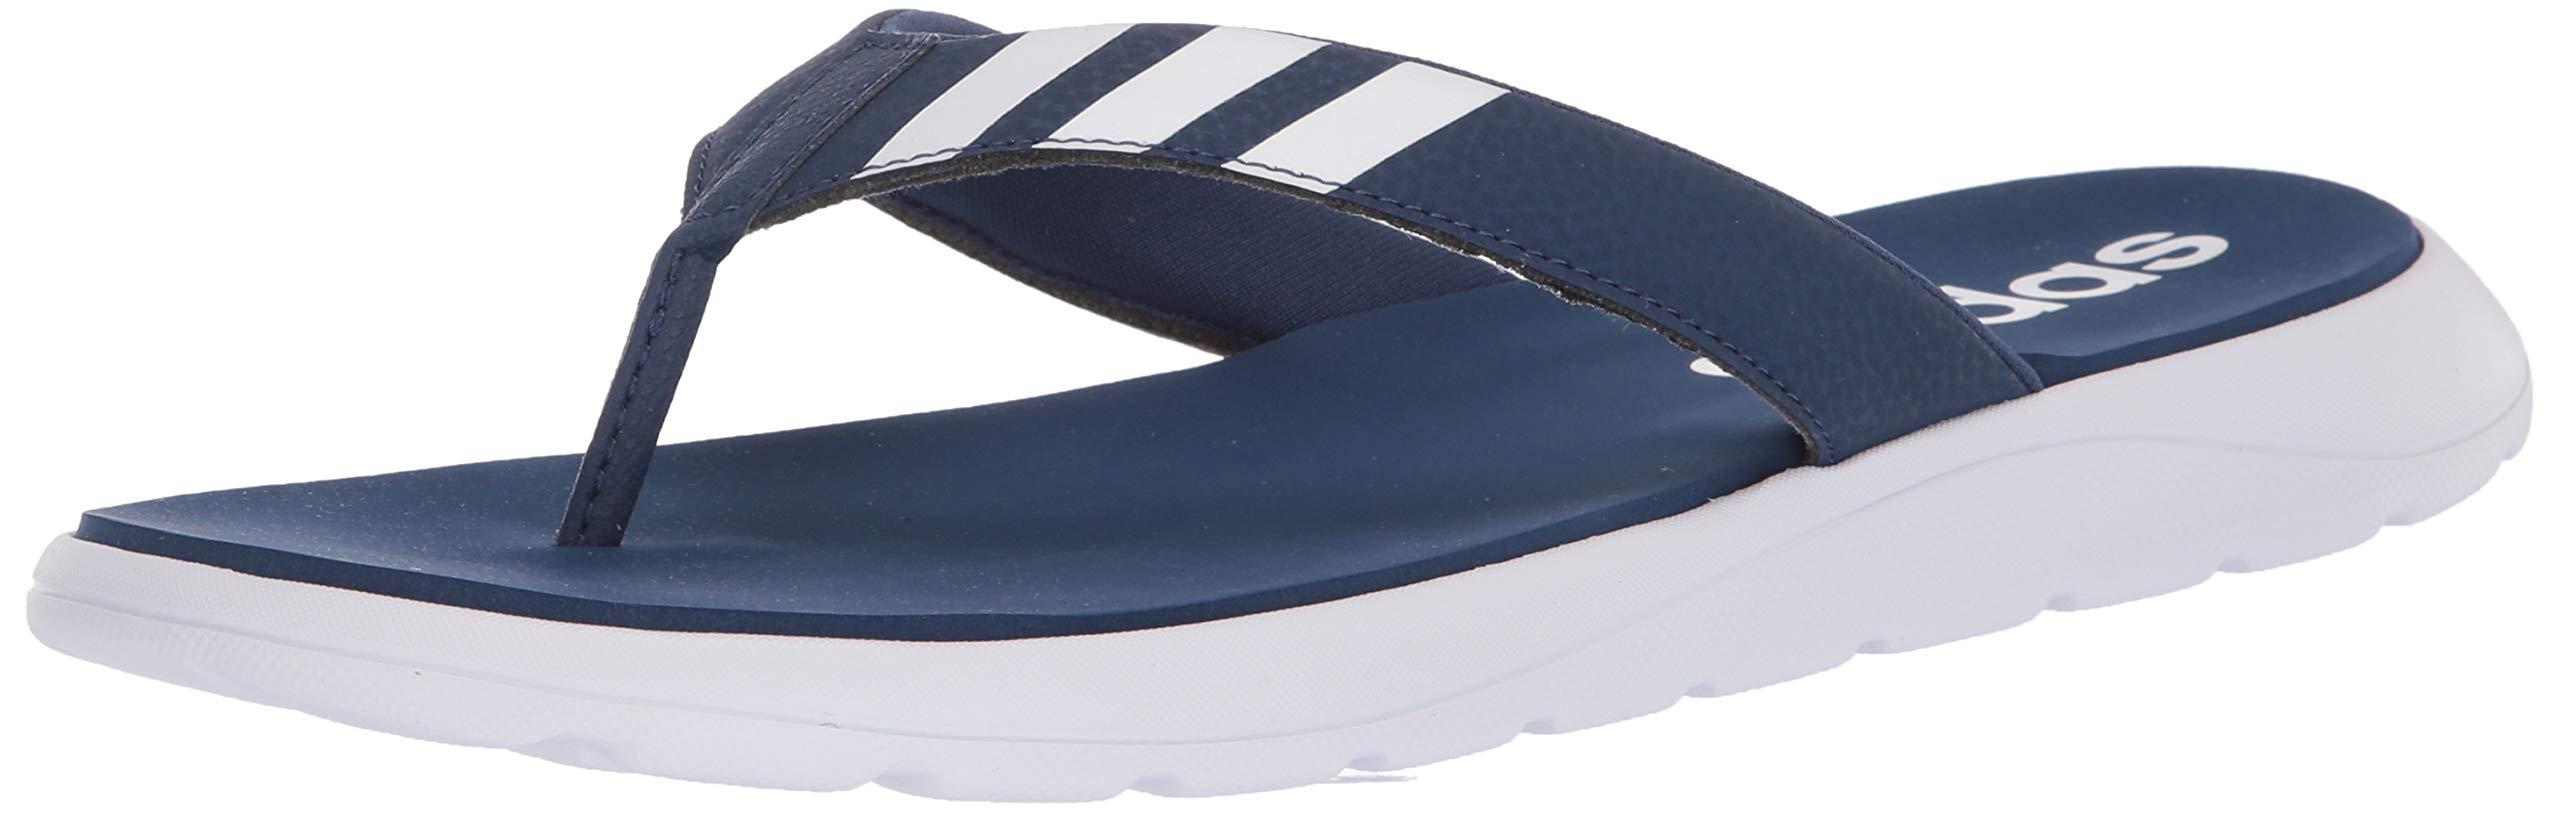 adidas Comfort Flip Flop Slide Sandal in Blue for Men - Lyst